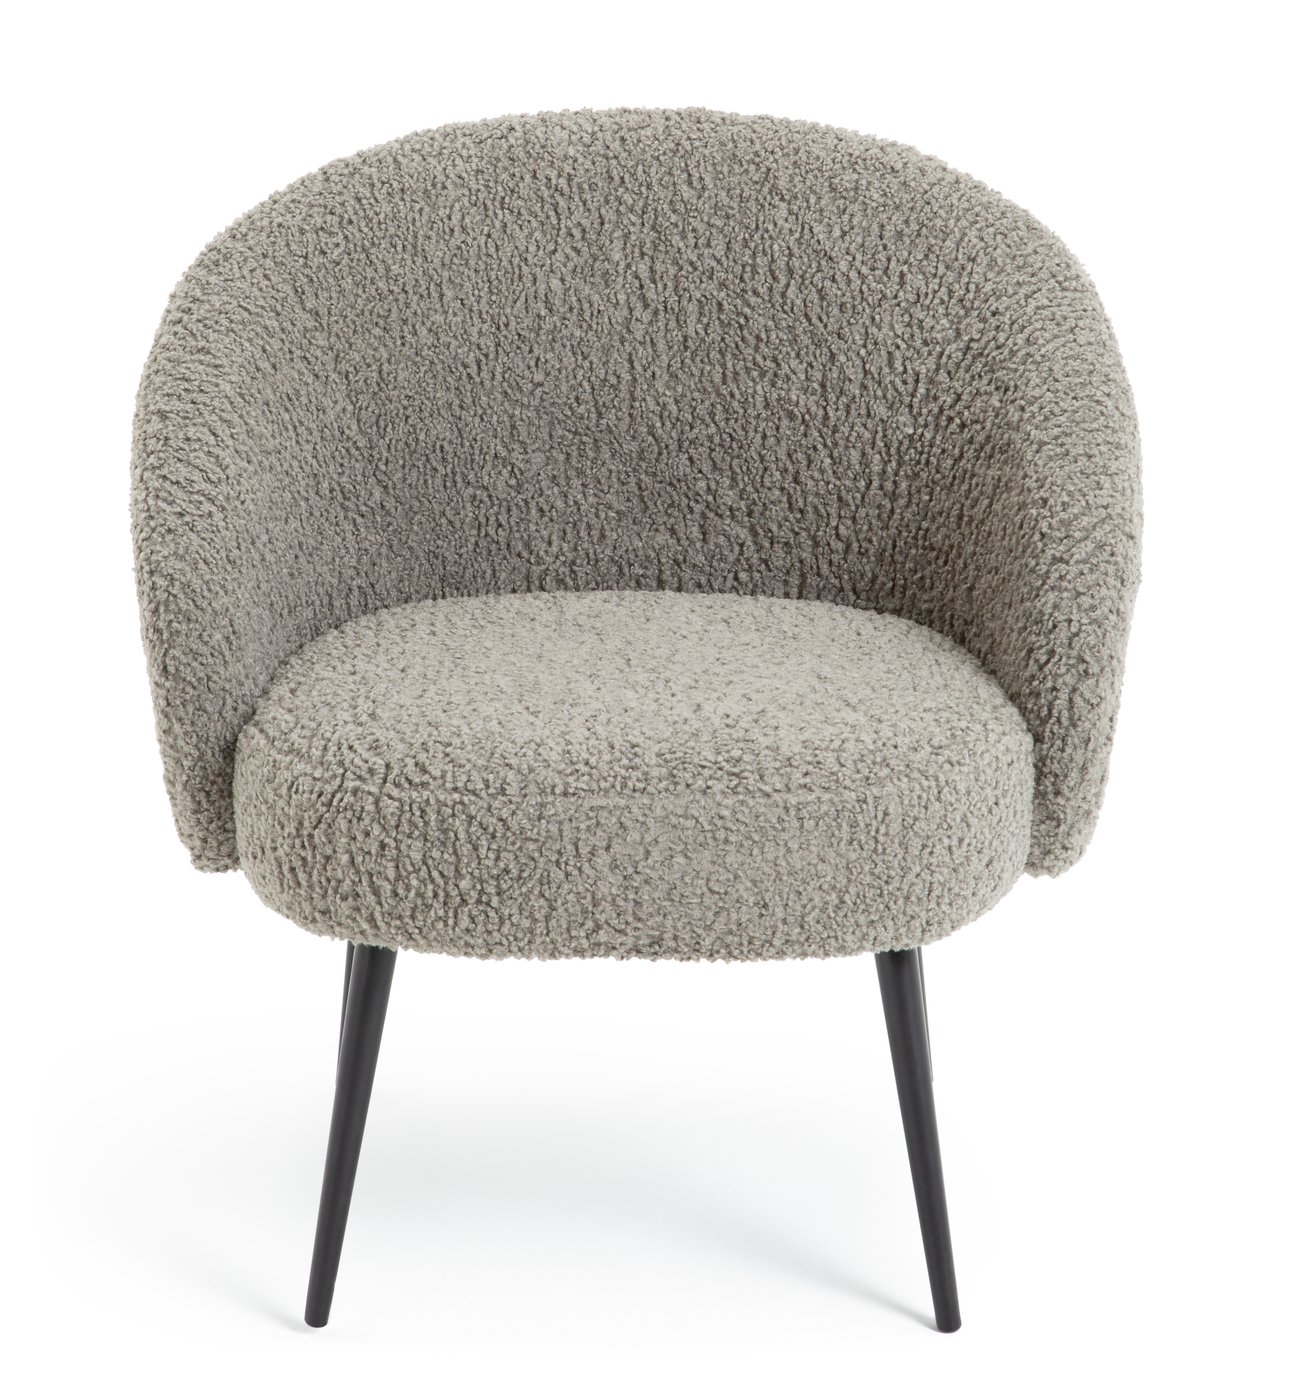 Habitat Ash Boucle Accent Chair - Grey